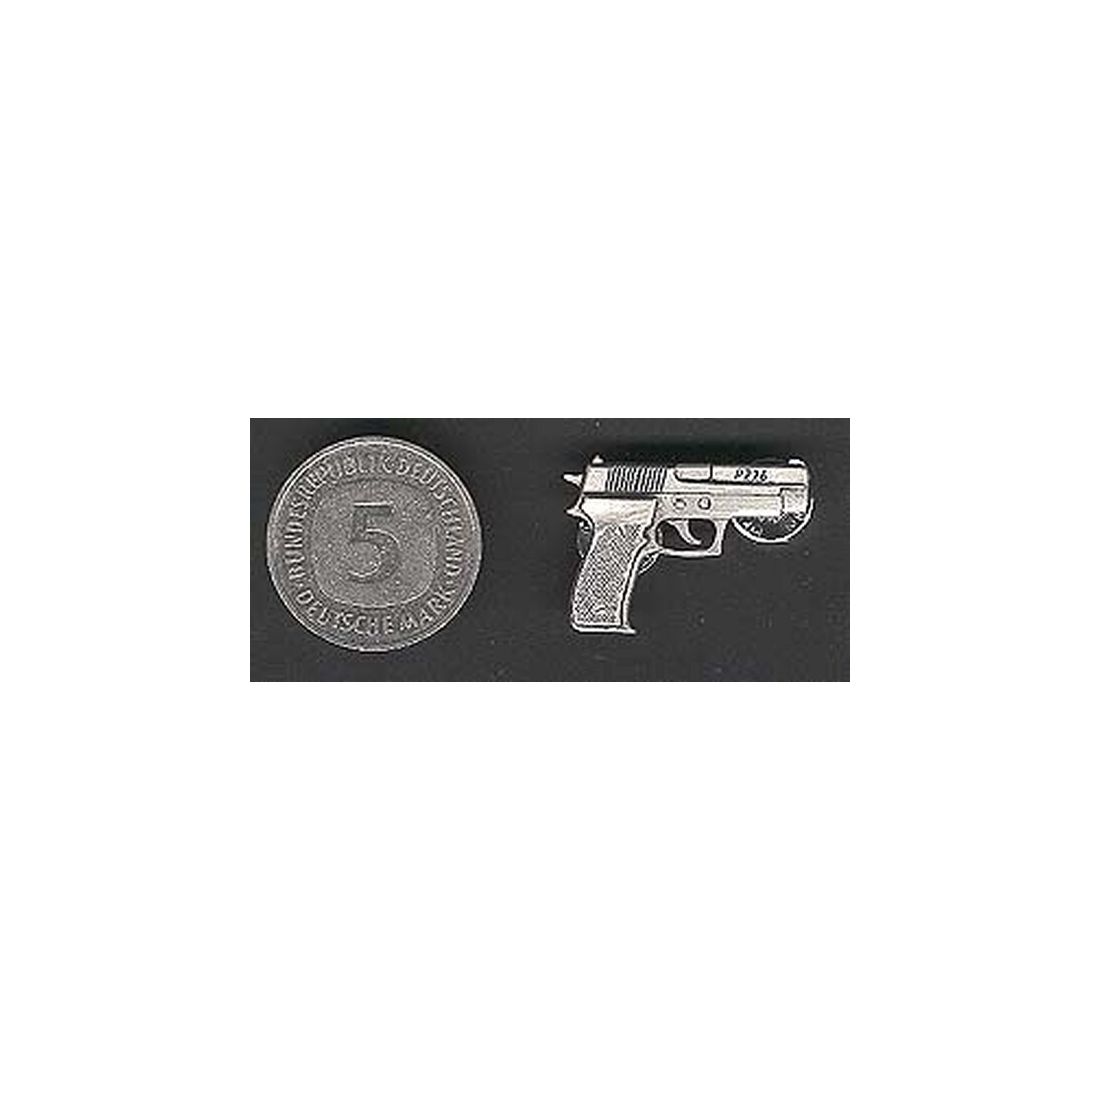 Pistole Sig Sauer P226 als Metall-Anstecker